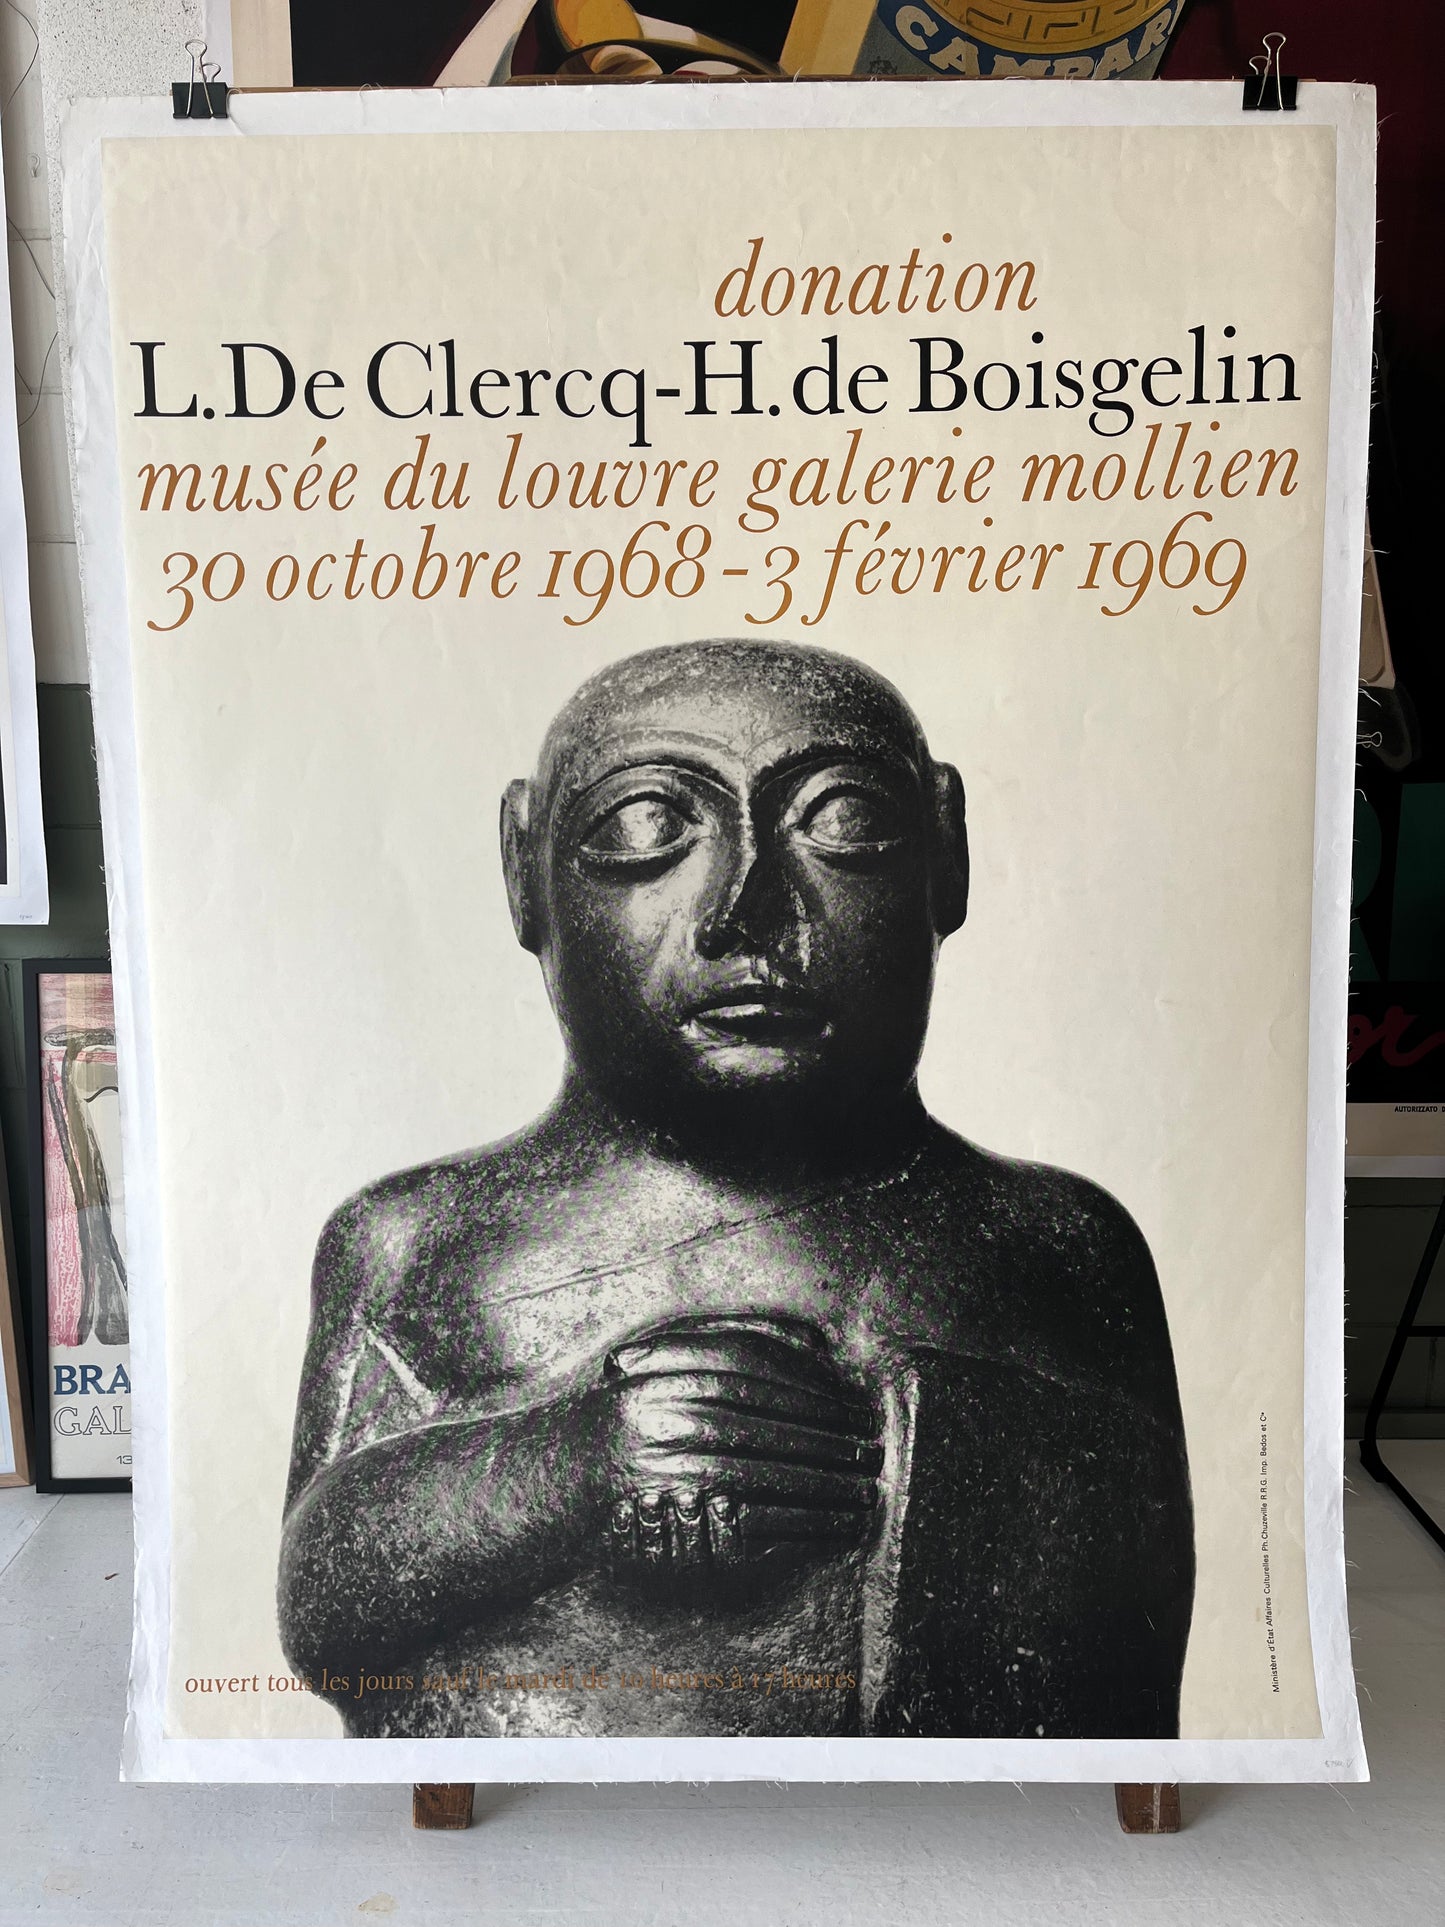 Donation by L. De Clercq-H. de Boisgelin